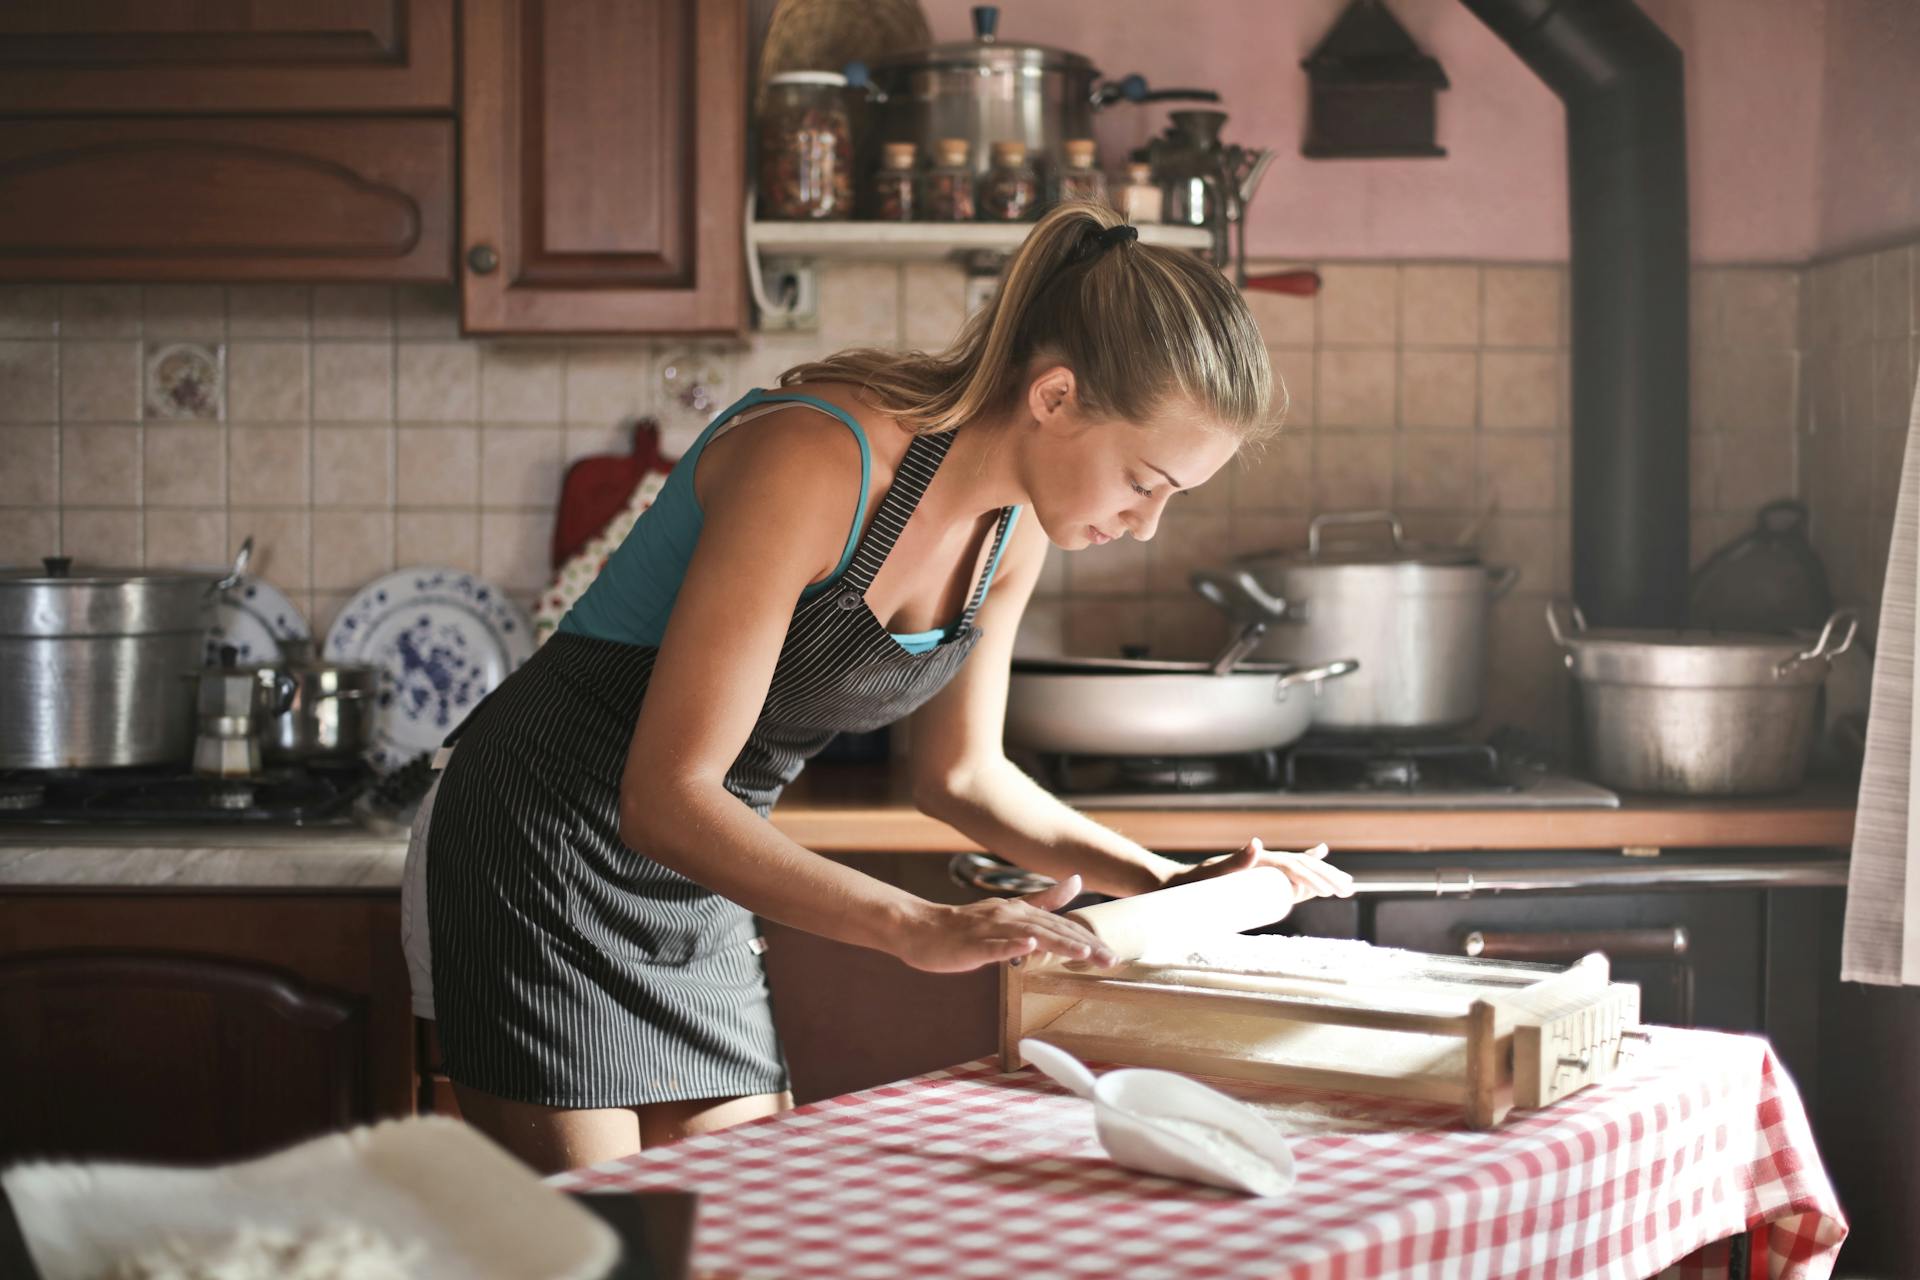 Eine junge Frau rollt Teig zum Backen in der Küche aus | Quelle: Pexels